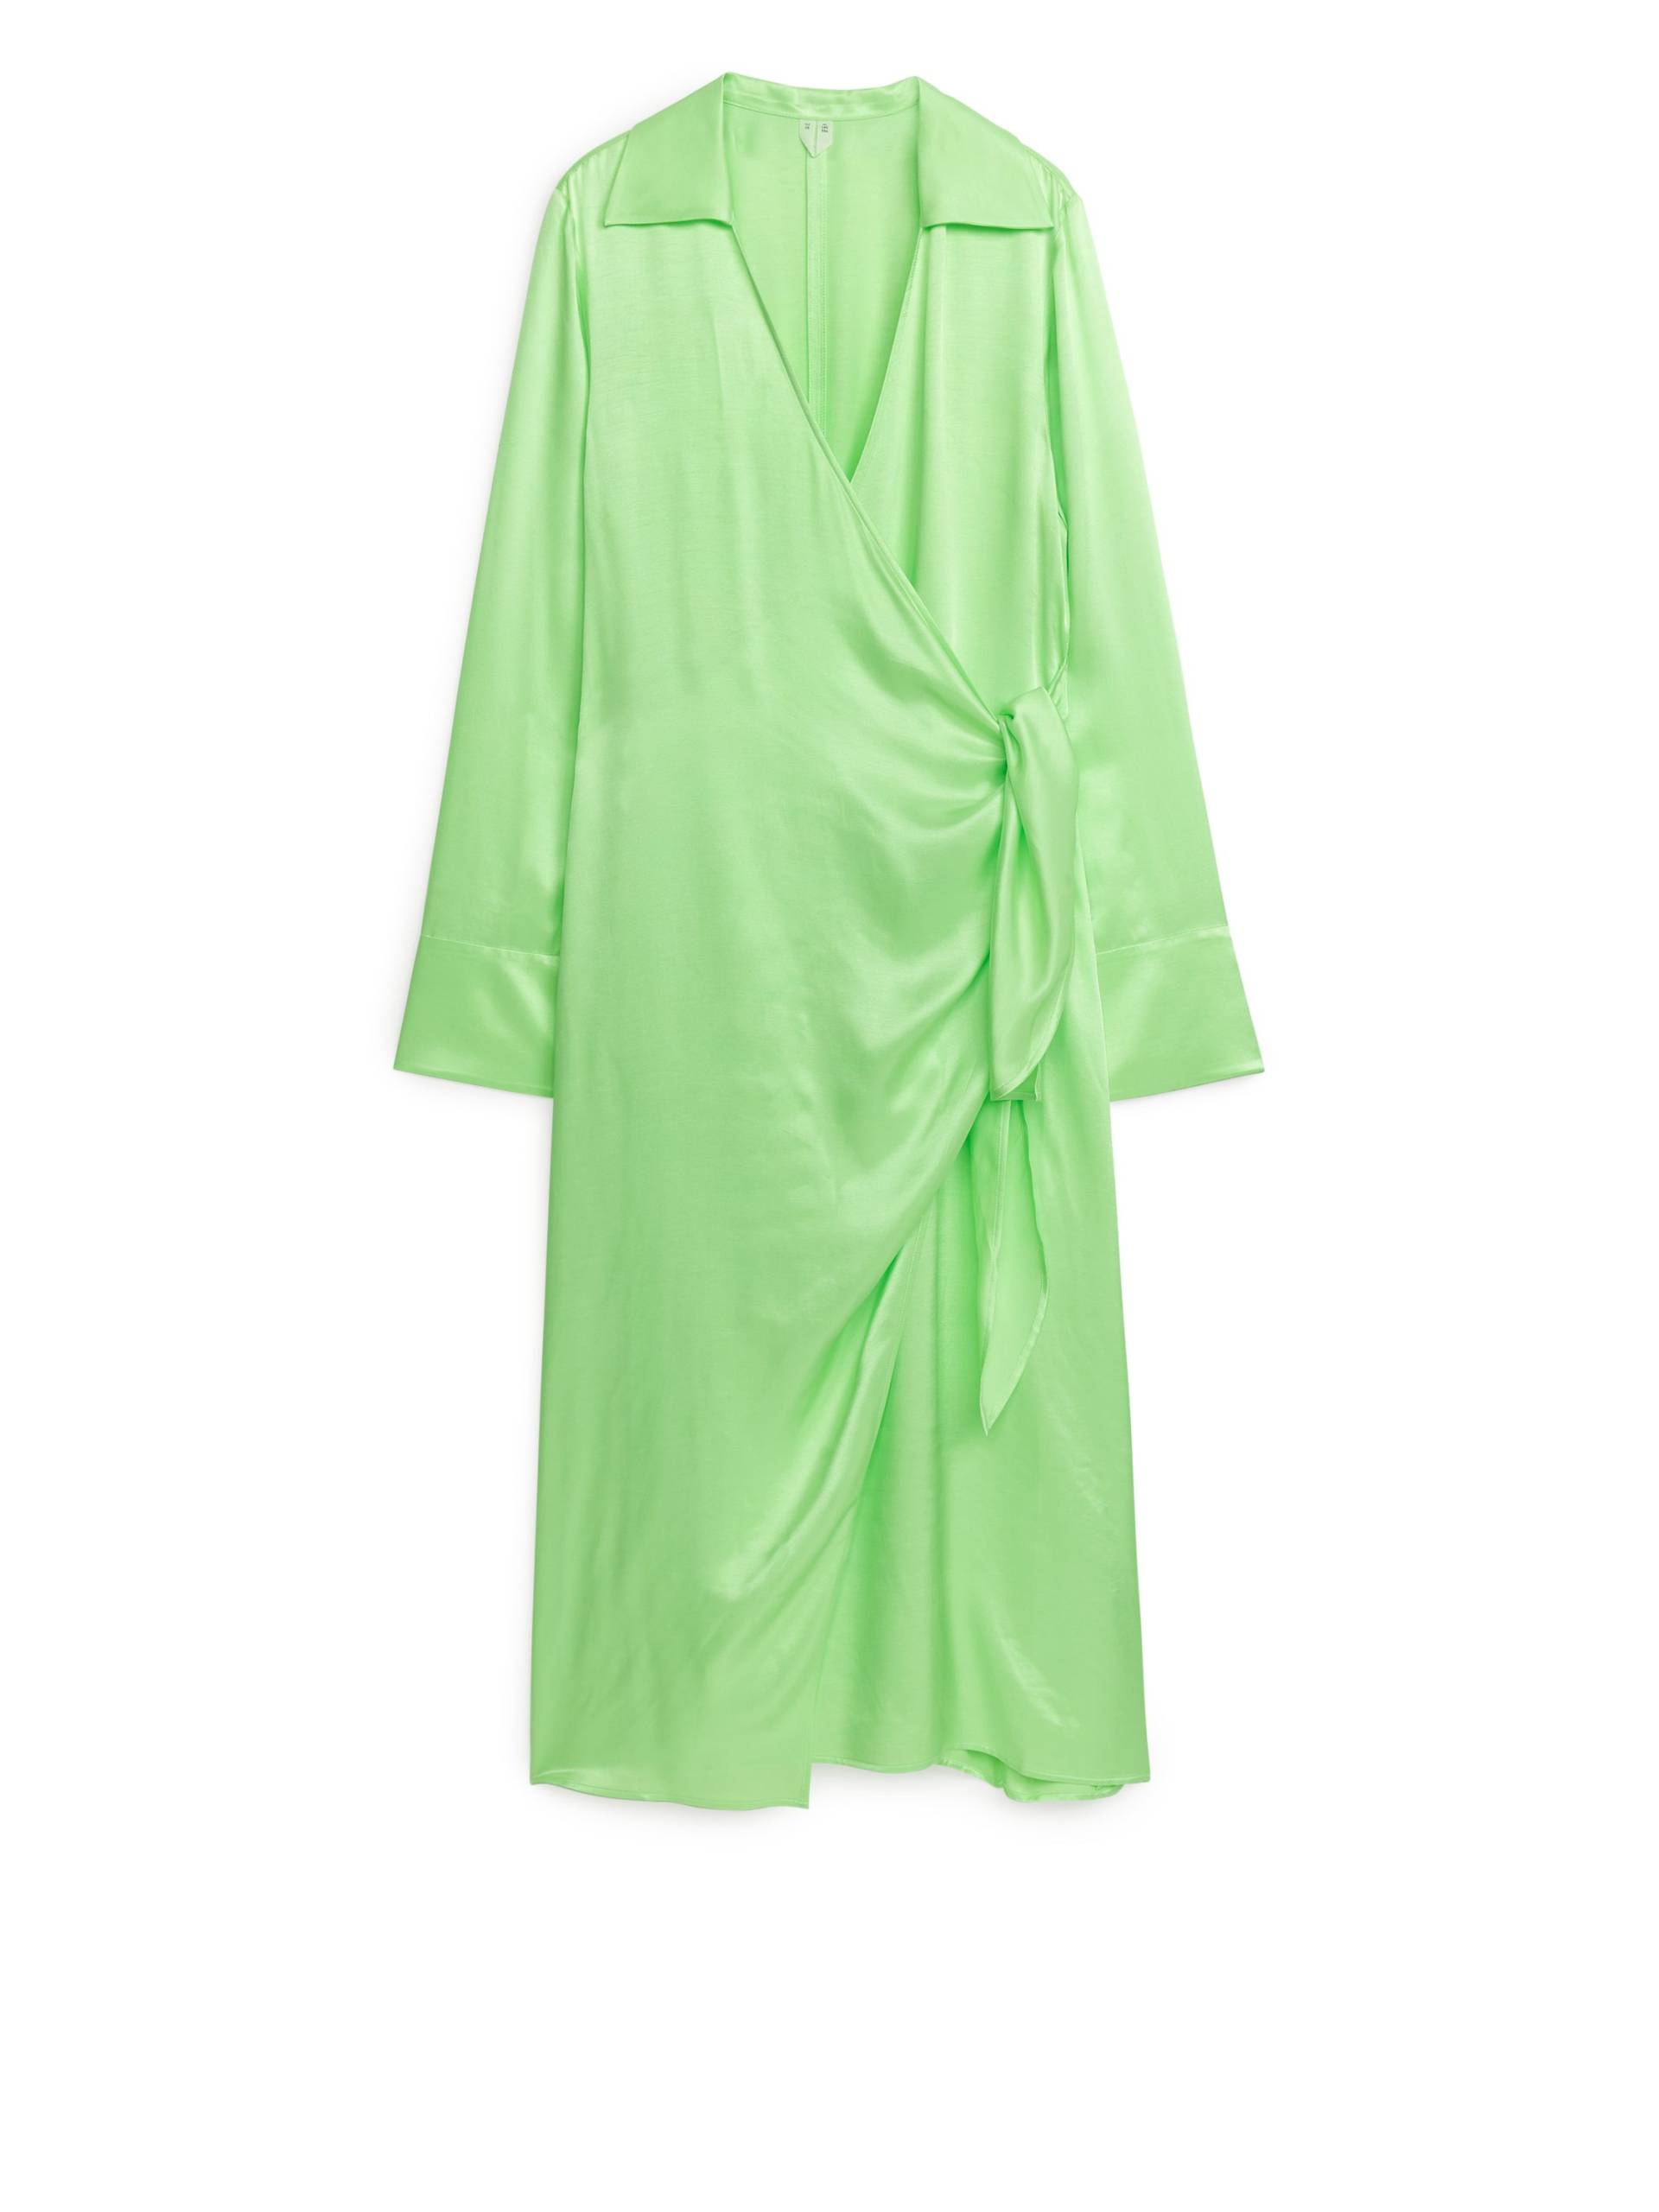 Arket Wickelkleid Hellgrün, Party kleider in Größe 34. Farbe: Light green von Arket